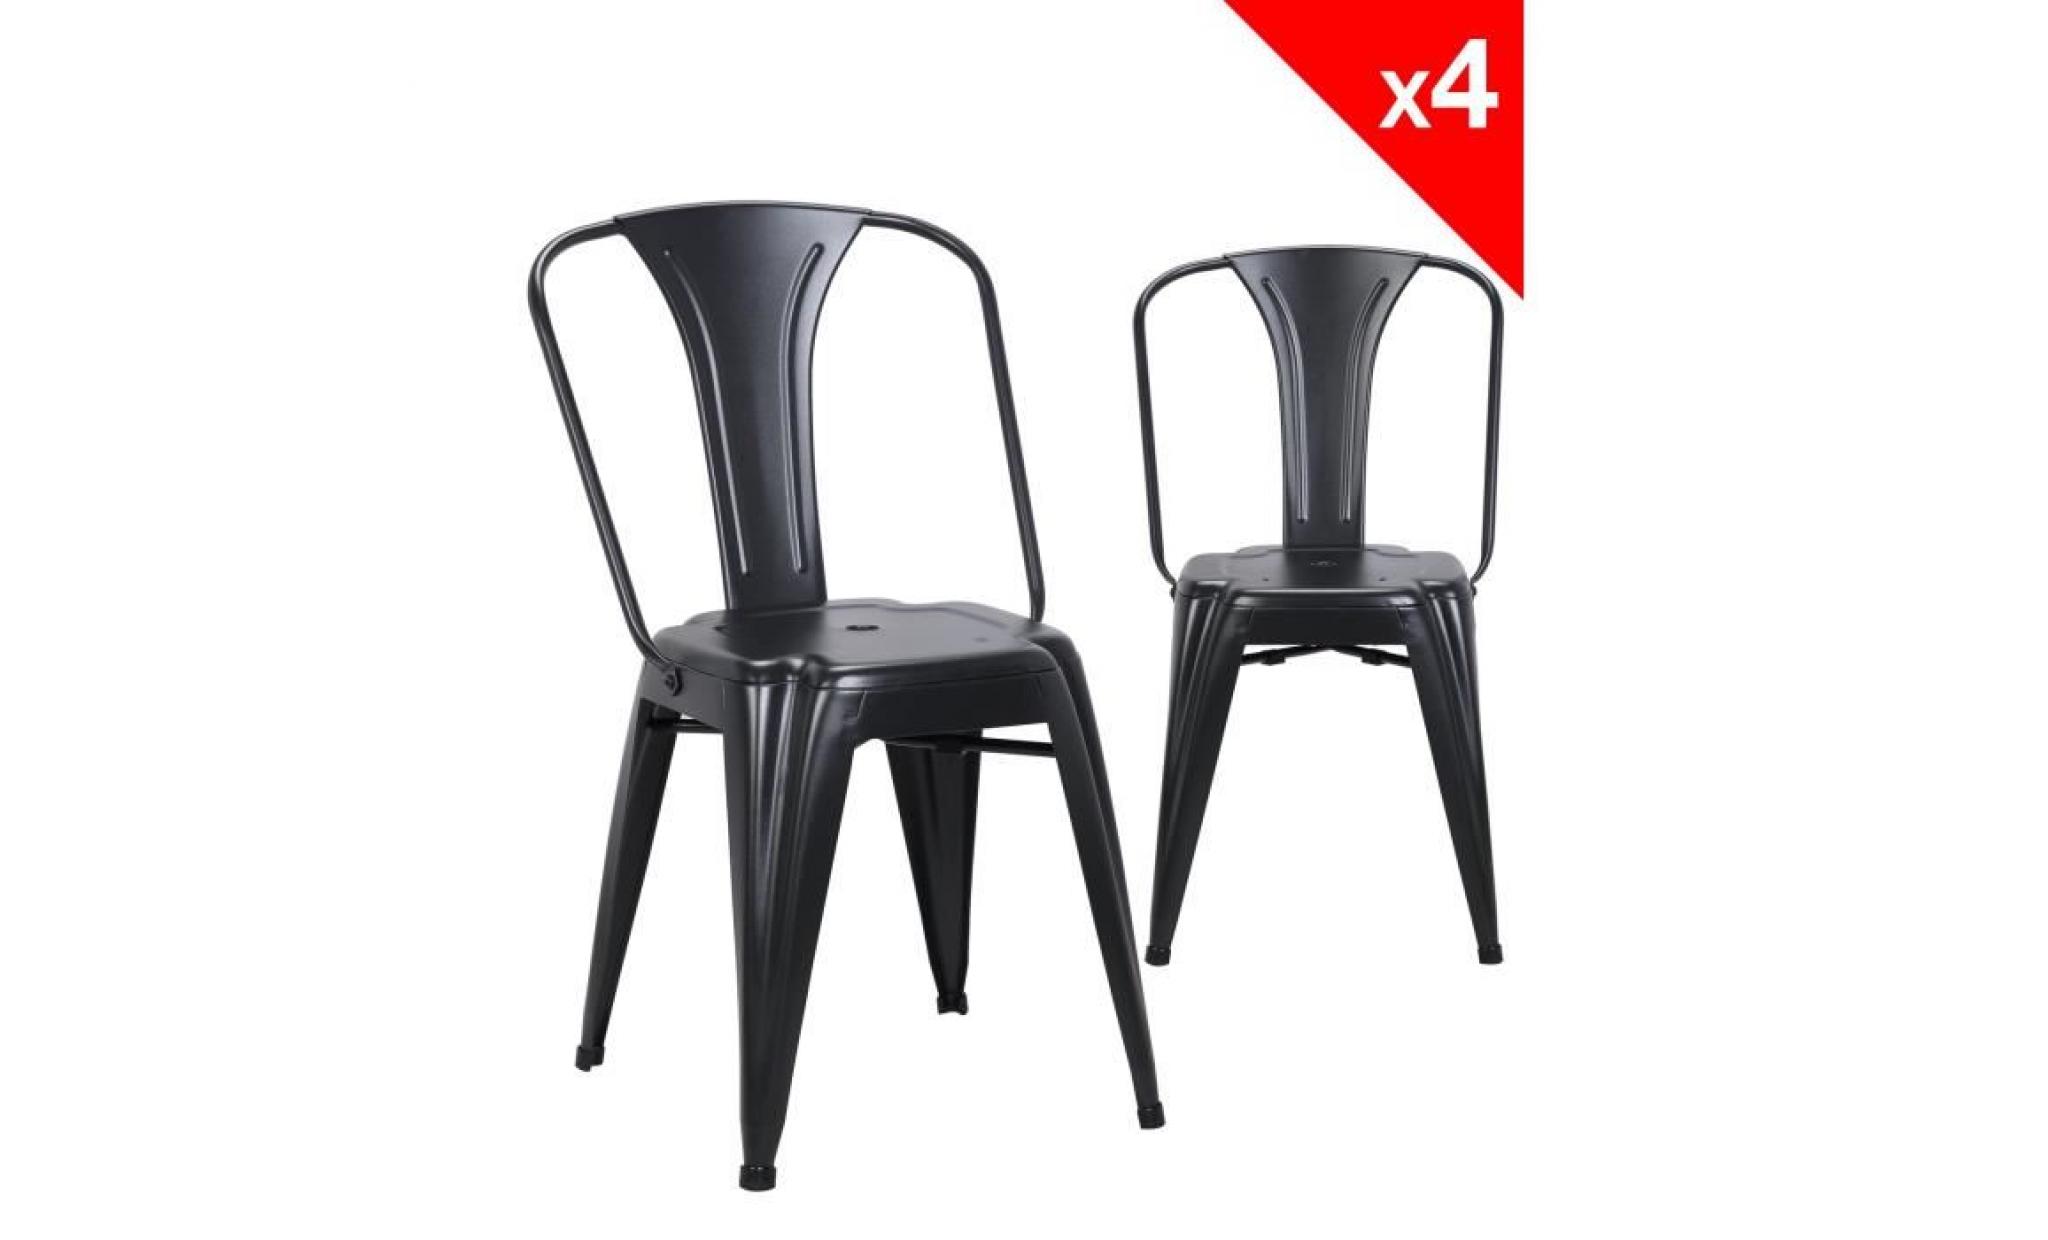 kayelles chaise metal industriel brook   lot de 4 chaises bistrot (noir)